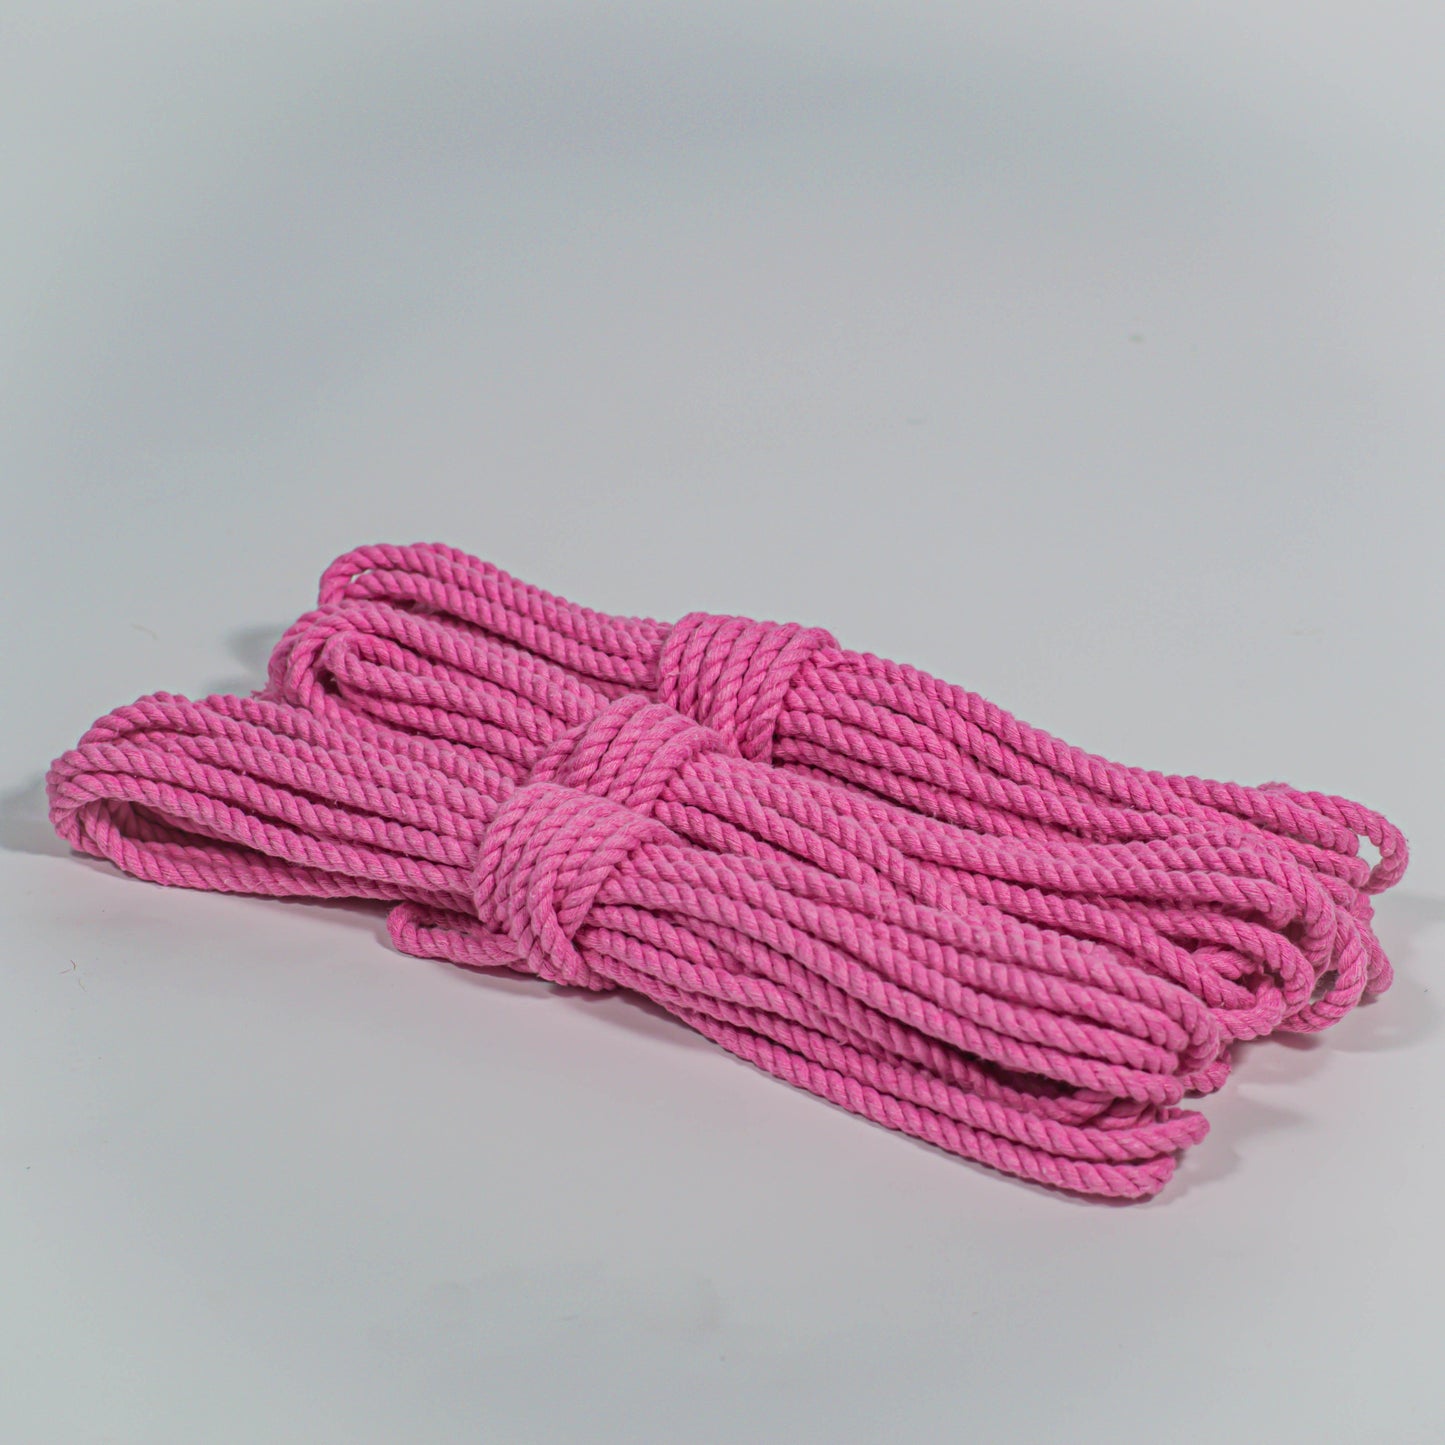 Cotton Play Ropes Shibari Rope bright pink Bundle of 3 